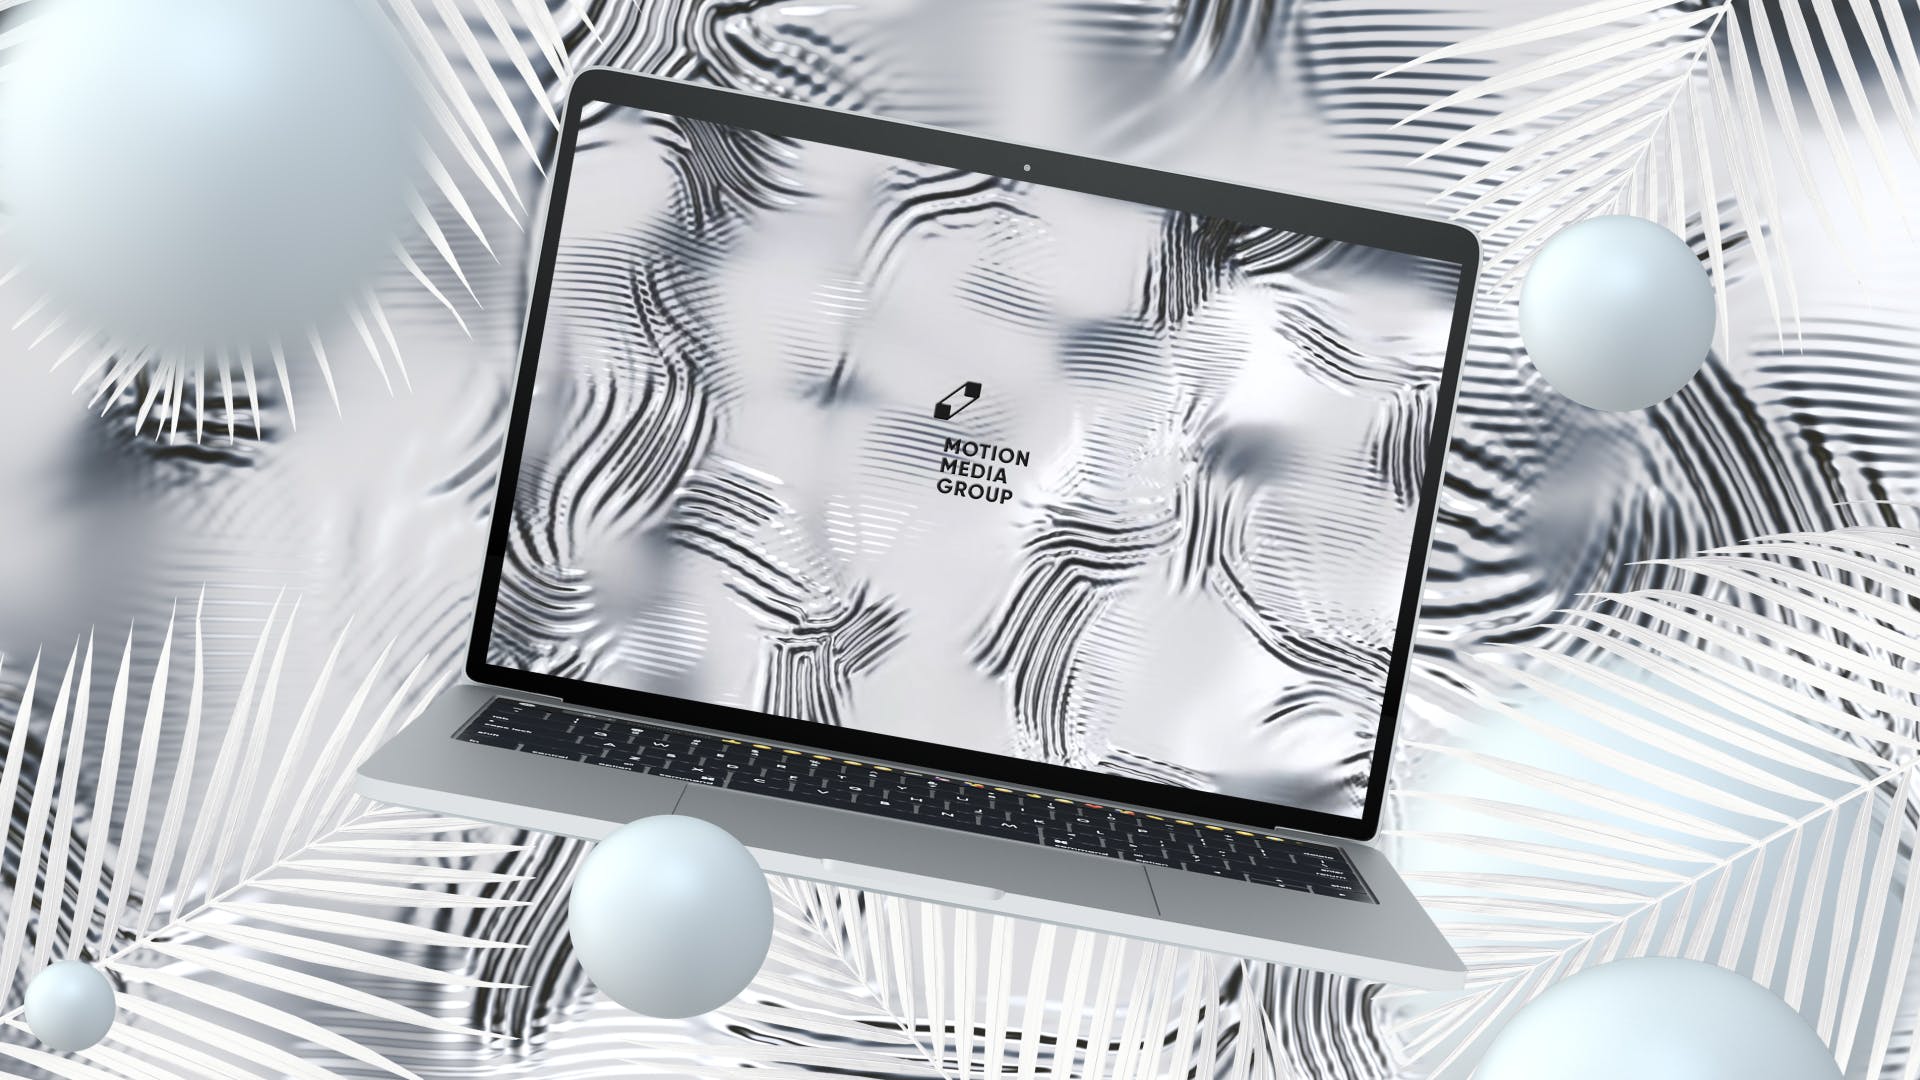 优雅时尚风格3D立体风格笔记本电脑屏幕预览蚂蚁素材精选样机 10 Light Laptop Mockups插图(3)